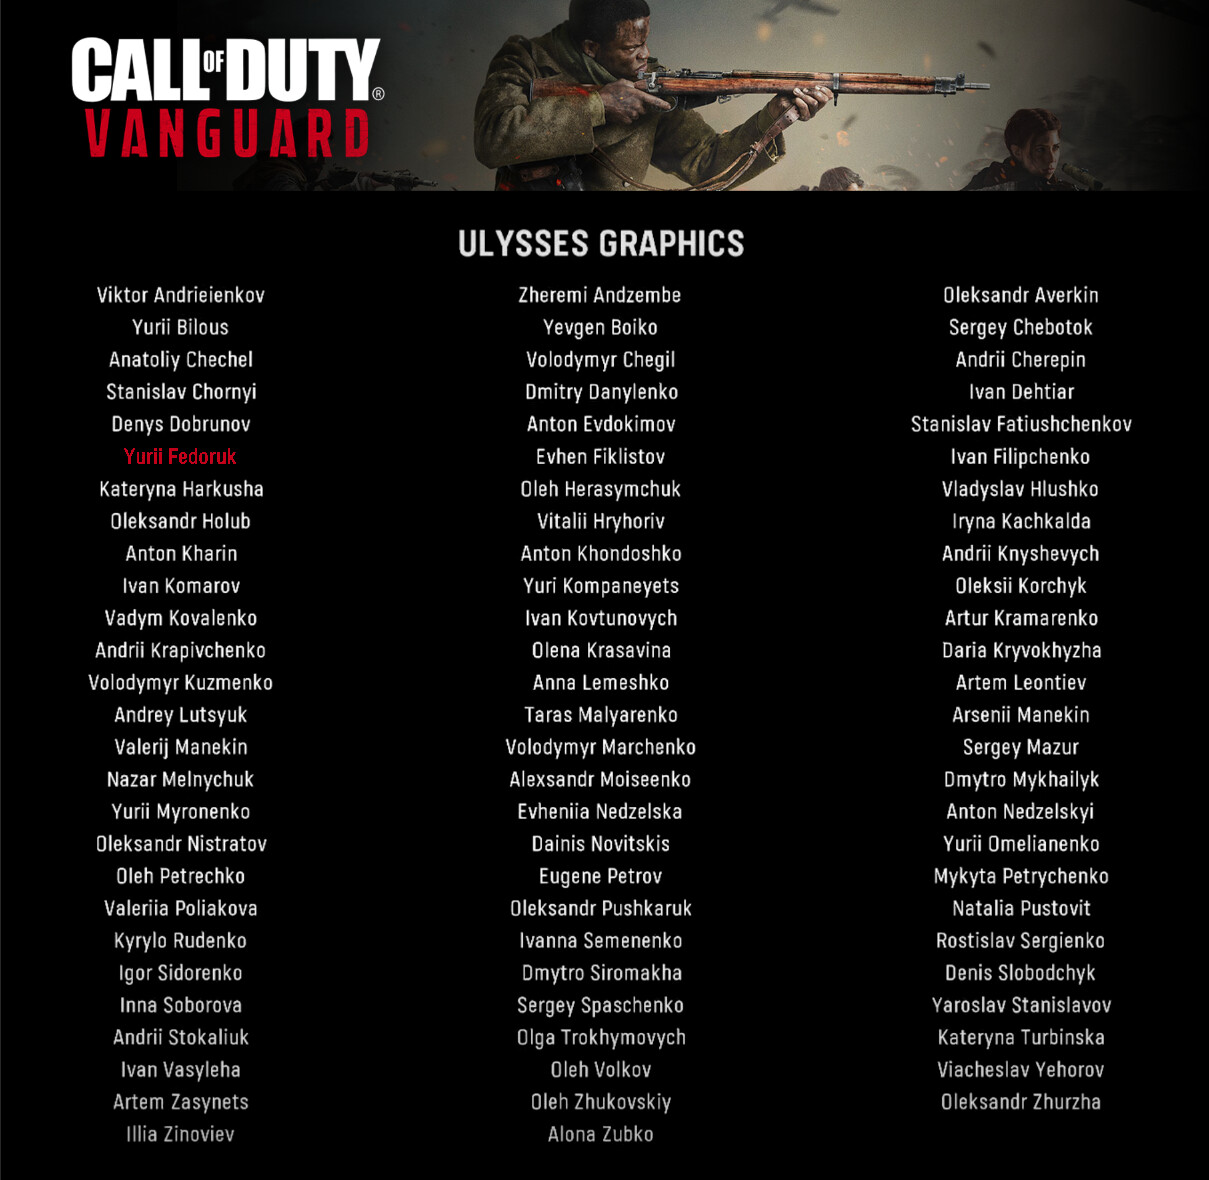 Call Of Duty Vanguard, detalles de la historia - JJyC